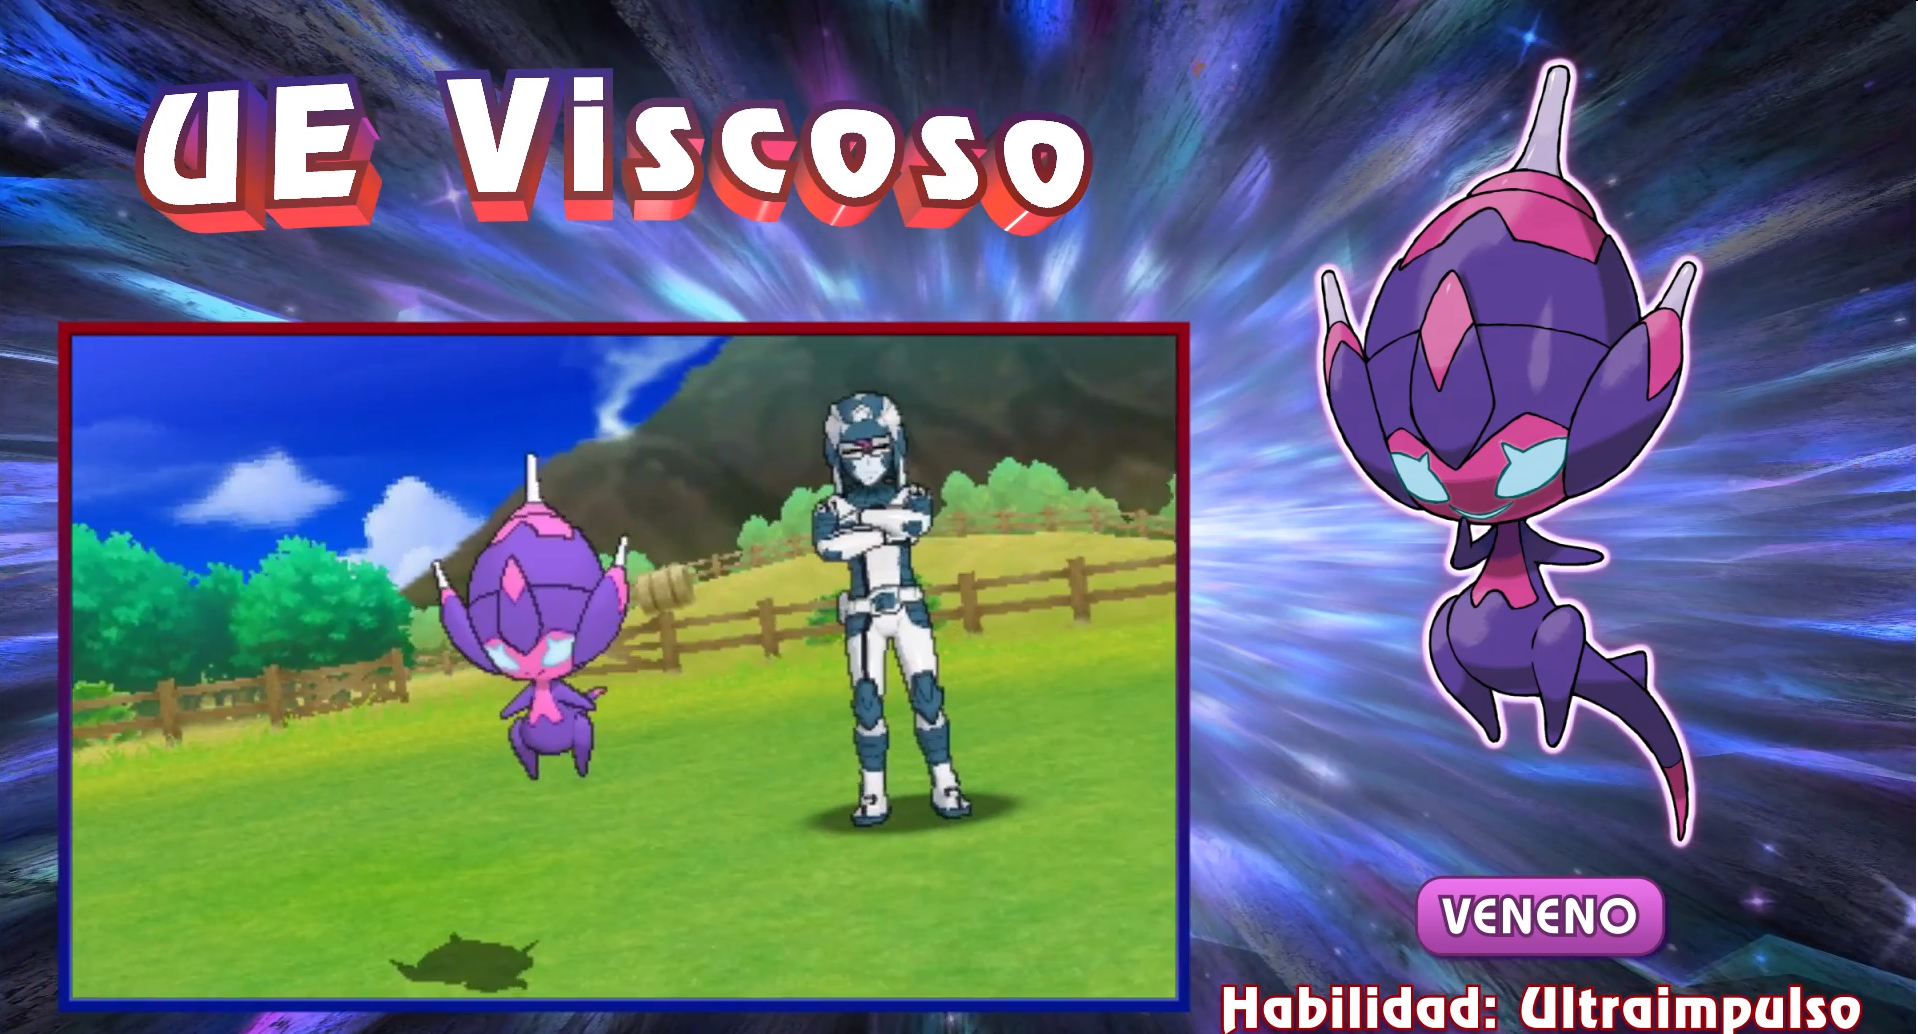 Desvelado un nuevo Ultraente de Pokémon Ultrasol y Ultraluna y último tráiler en español